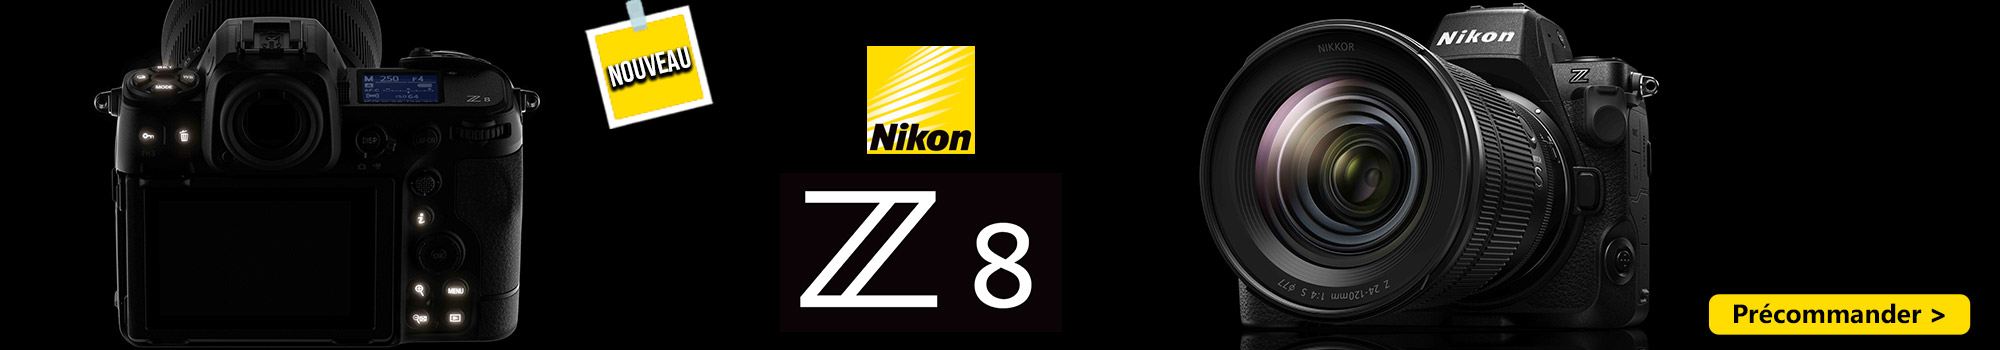 NIKON Z8